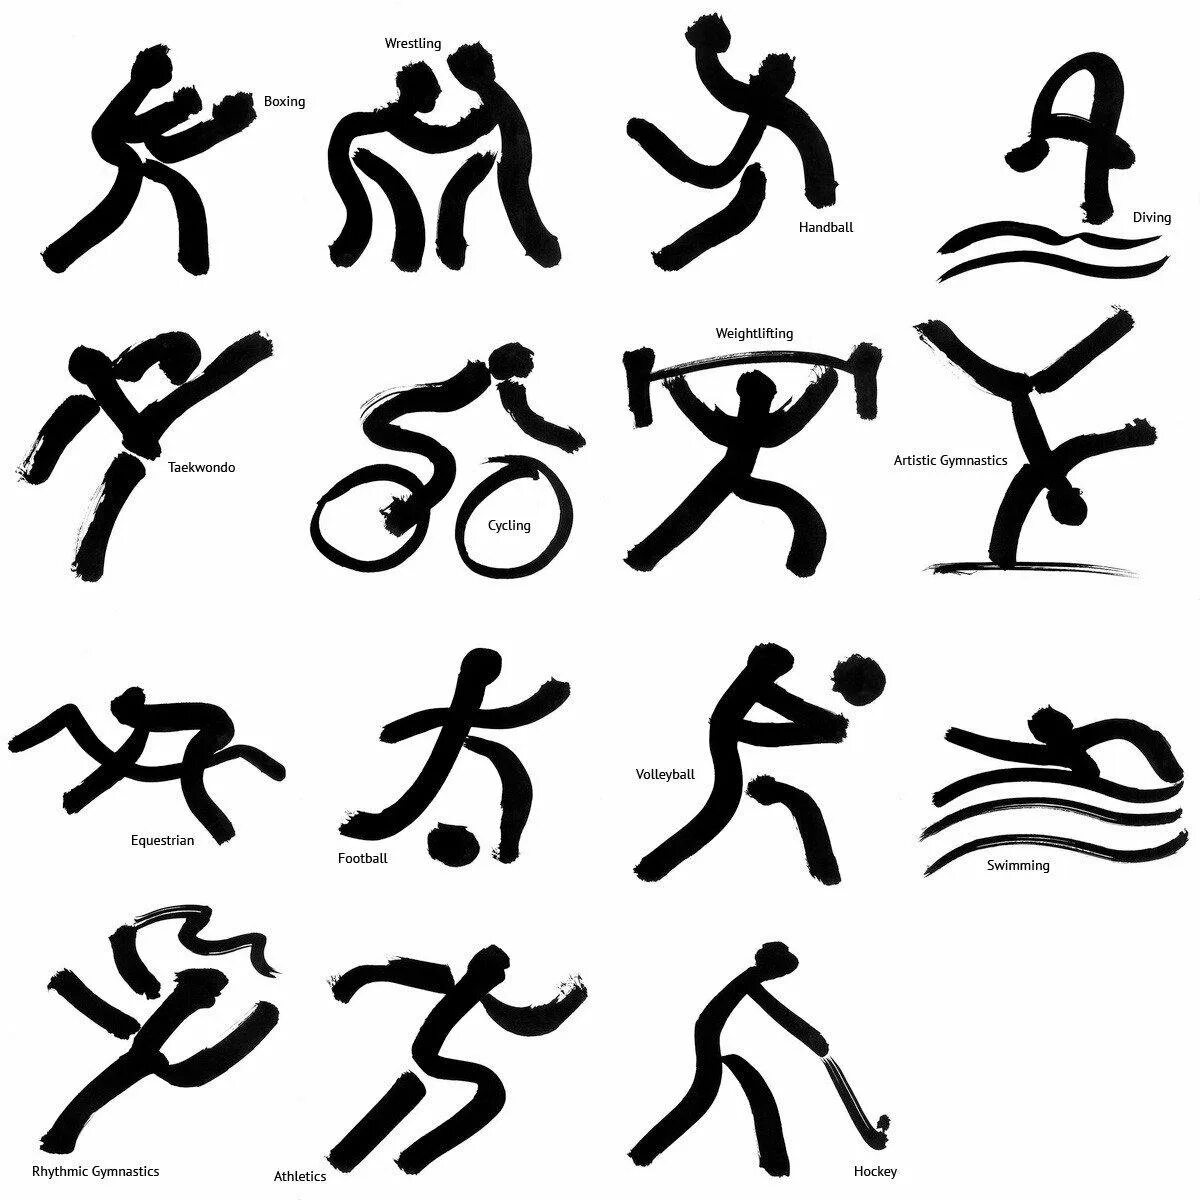 Какие есть спортивные знаки. Спортивные значки. Виды спорта. Спортивные символы видов спорта. Значки Олимпийских видов спорта.